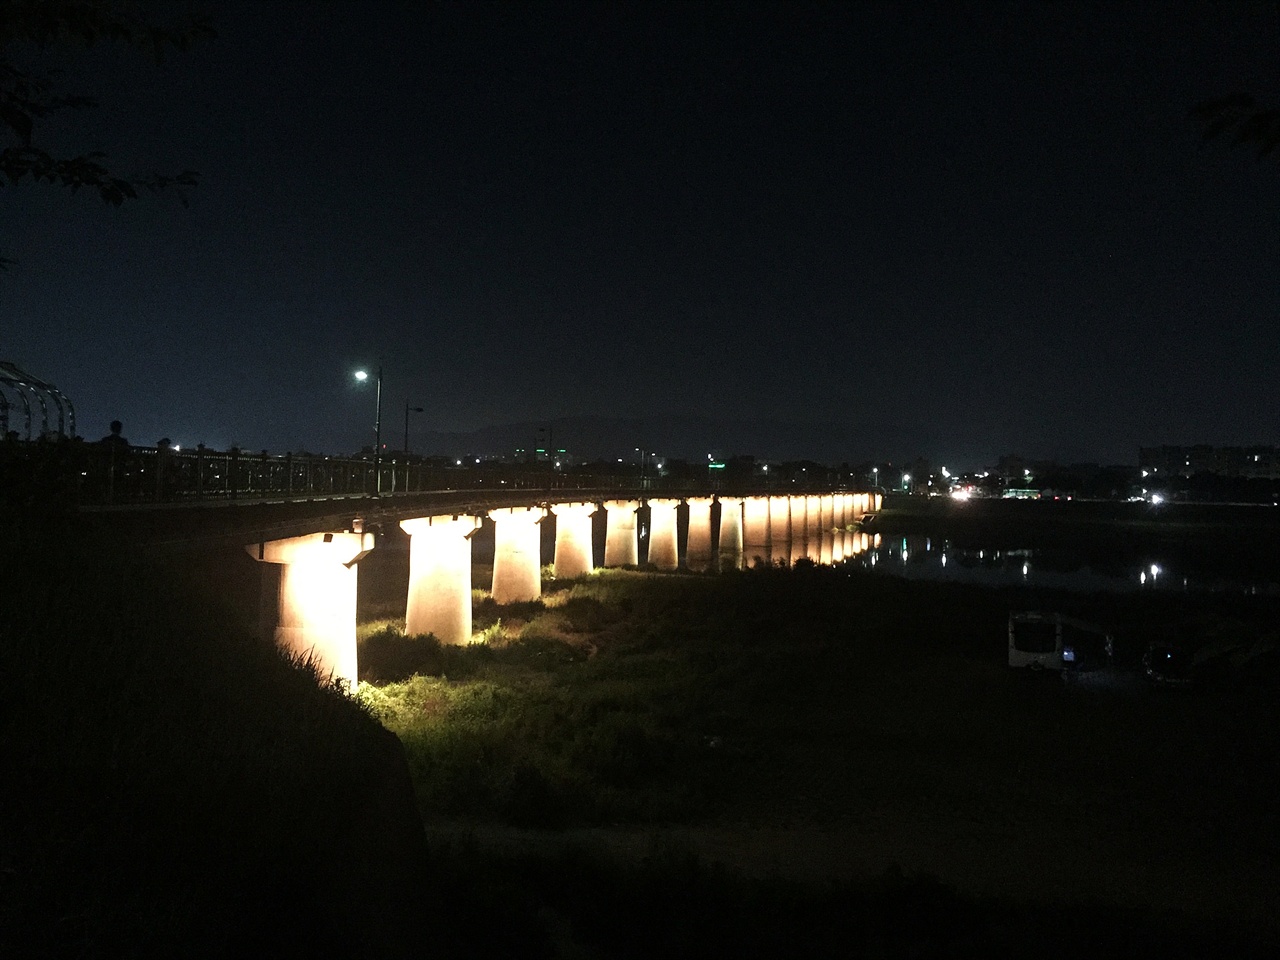 2018년 7월 14일 촬영한 반쪽운영중인 경주 서천 장군교 야간경관조명